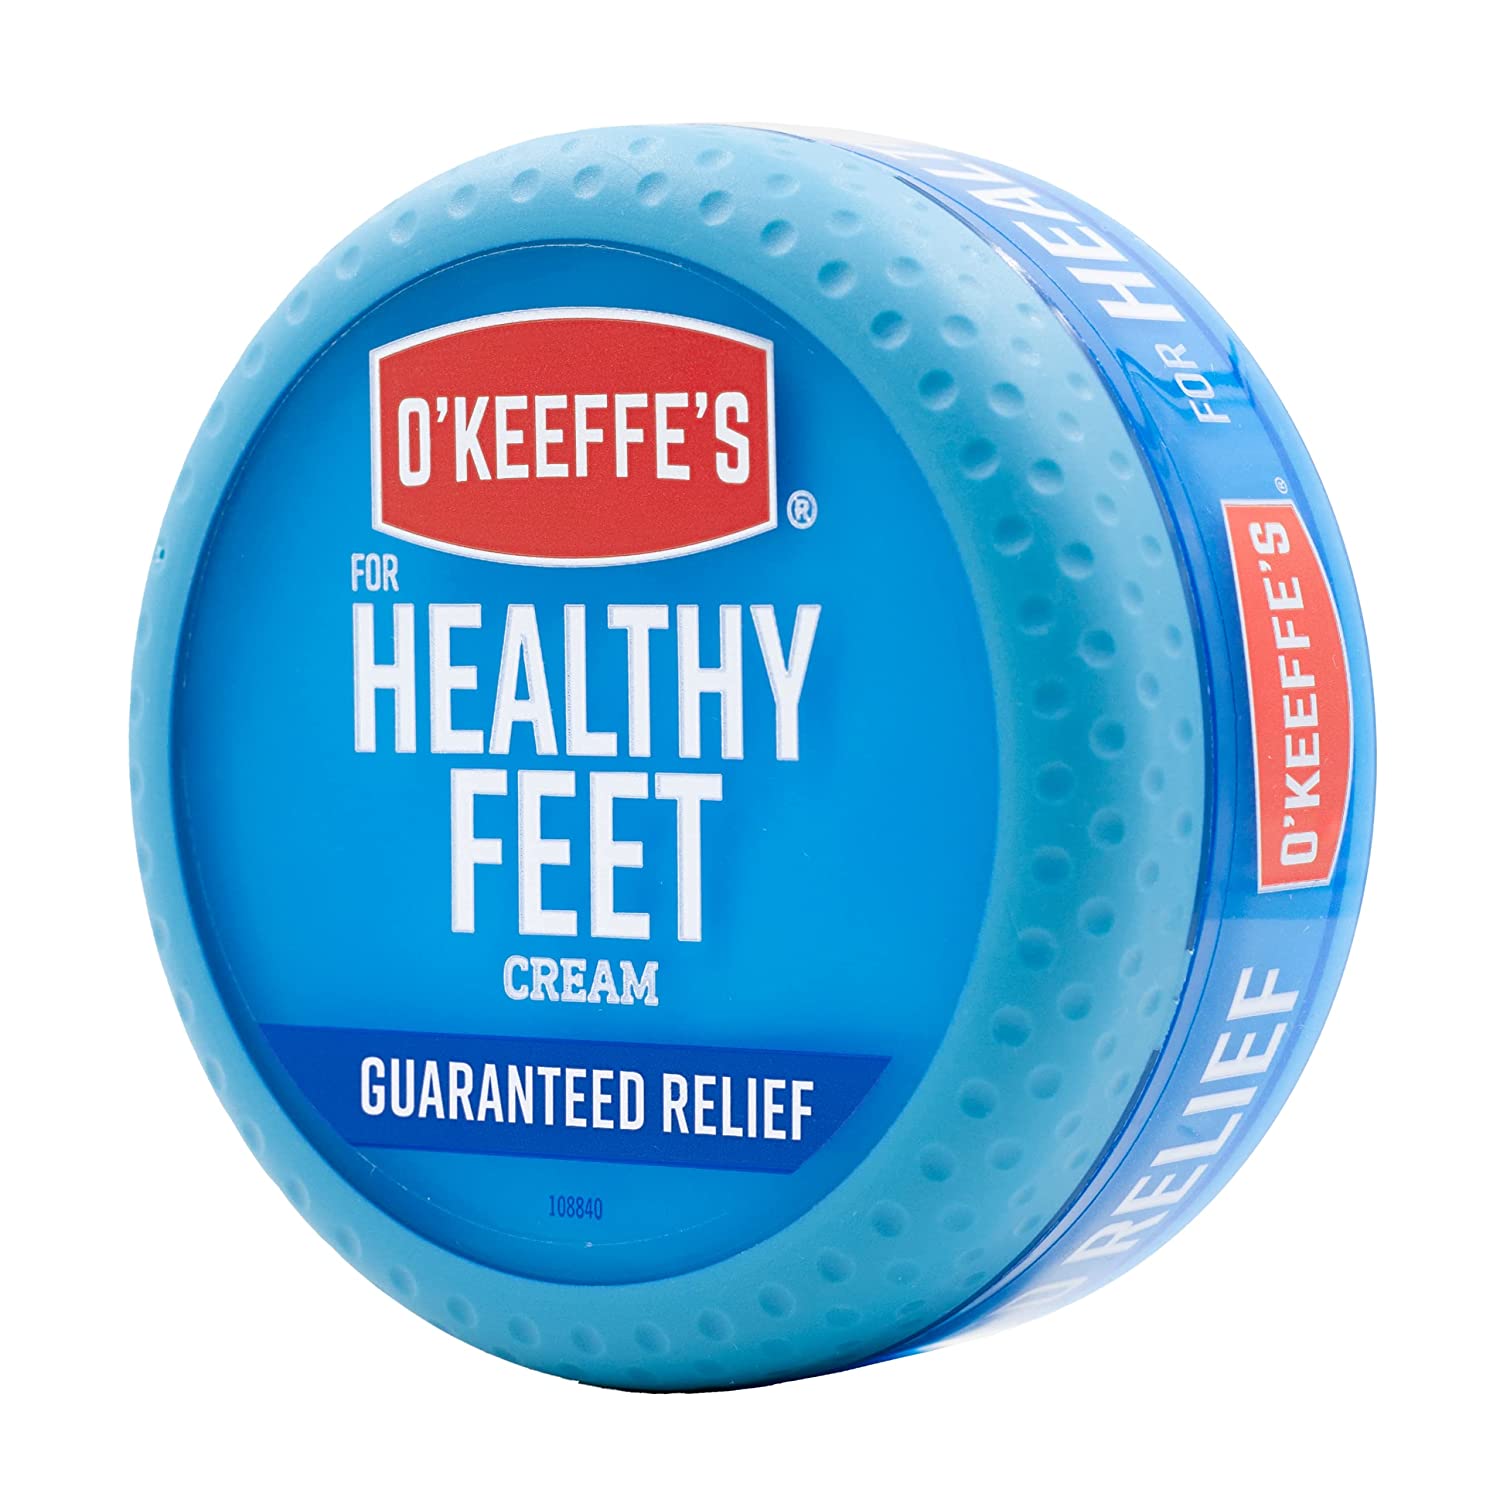 okeefes healthy feet